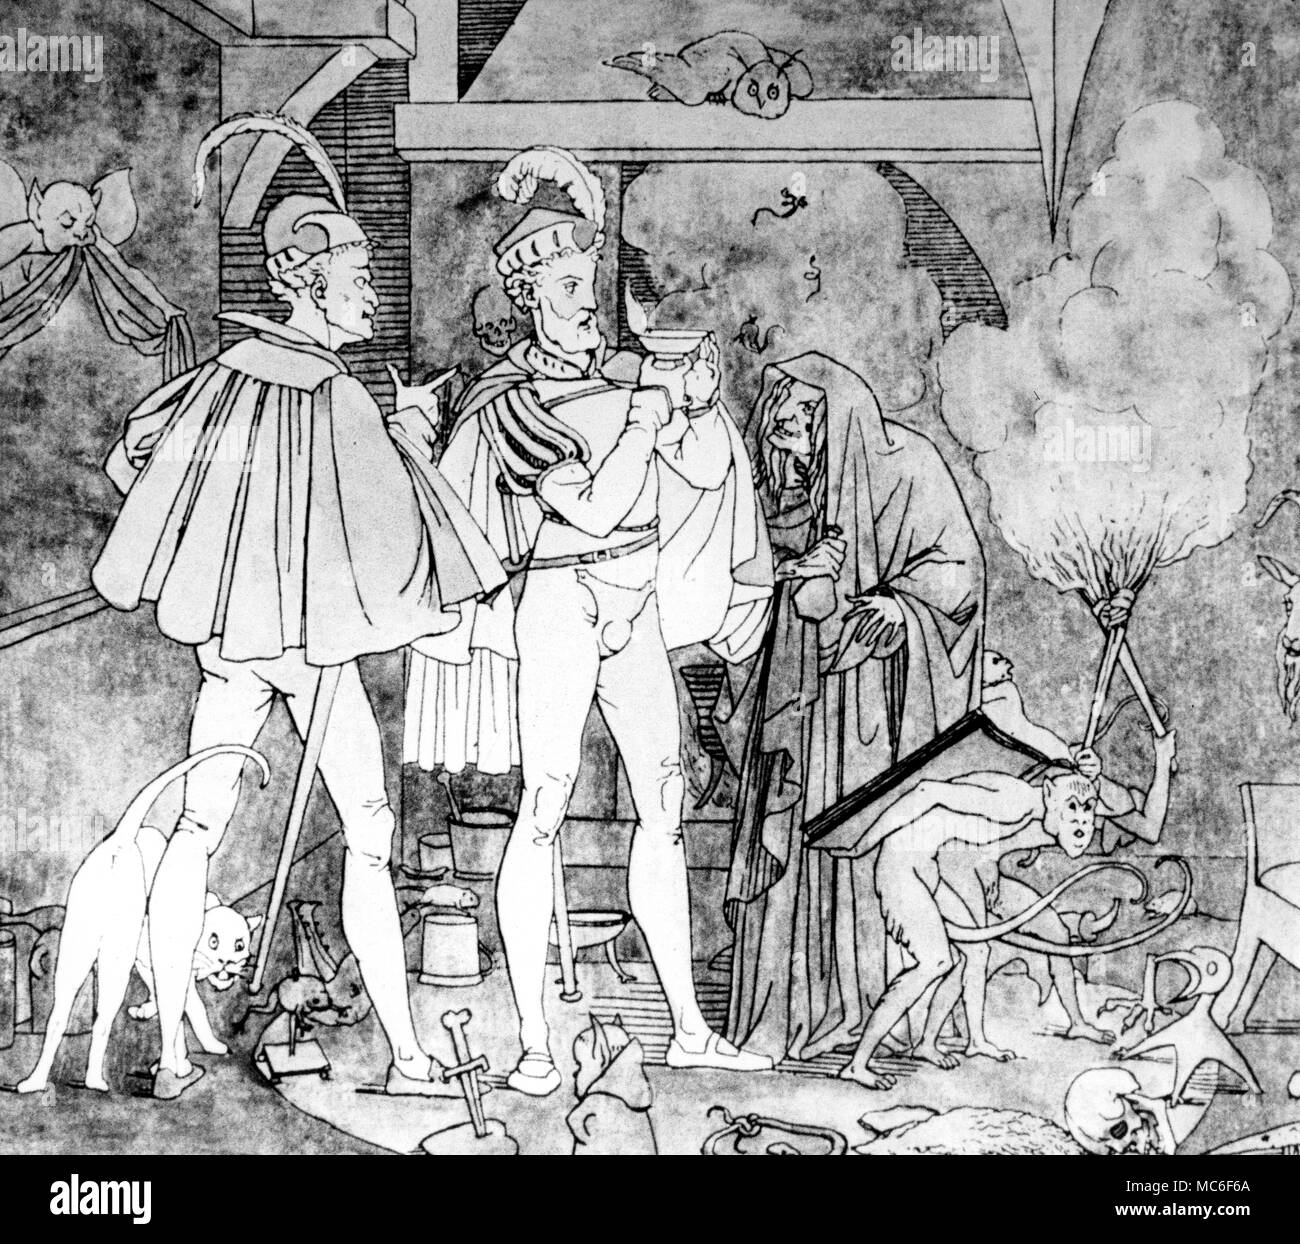 Mephistopheles e Faust con la strega: Faust tenendo la lampada magica. Colorate a mano dopo la stampa di Moritz Retzch, Umrisse zu Goethes Faust, 1834. Foto Stock